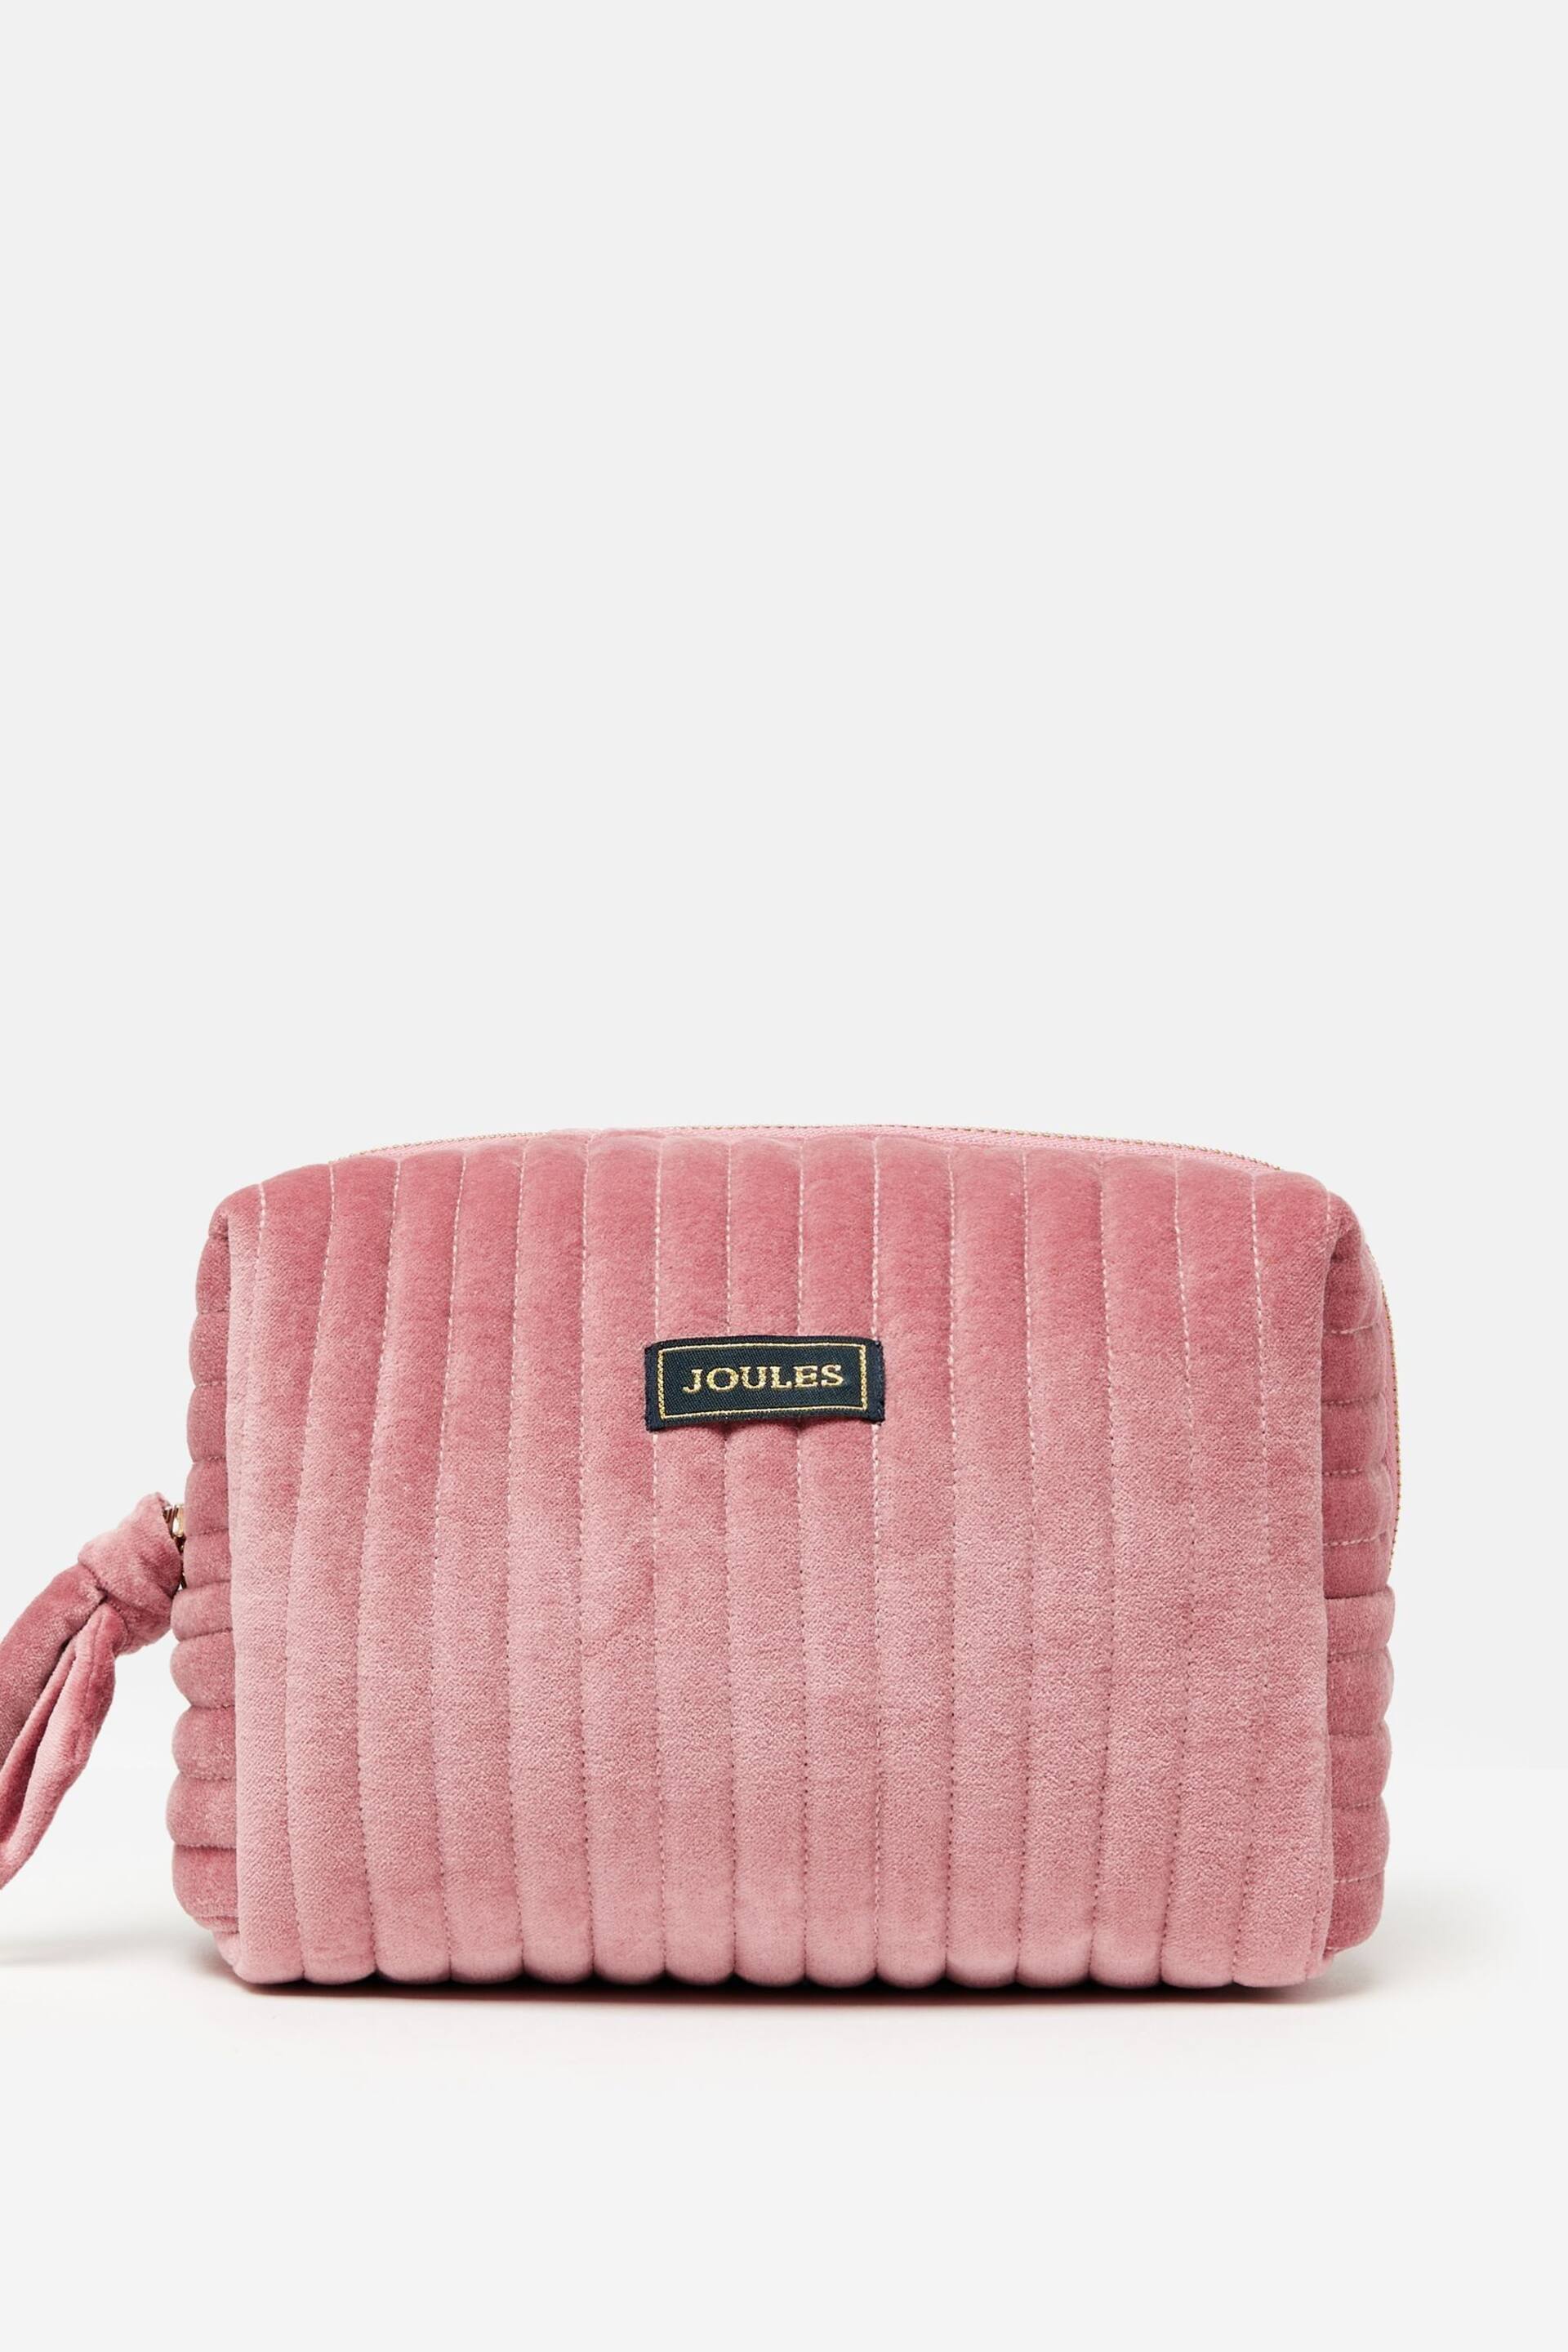 Joules Lillia Rose Pink Velvet Wash Bag - Image 2 of 6